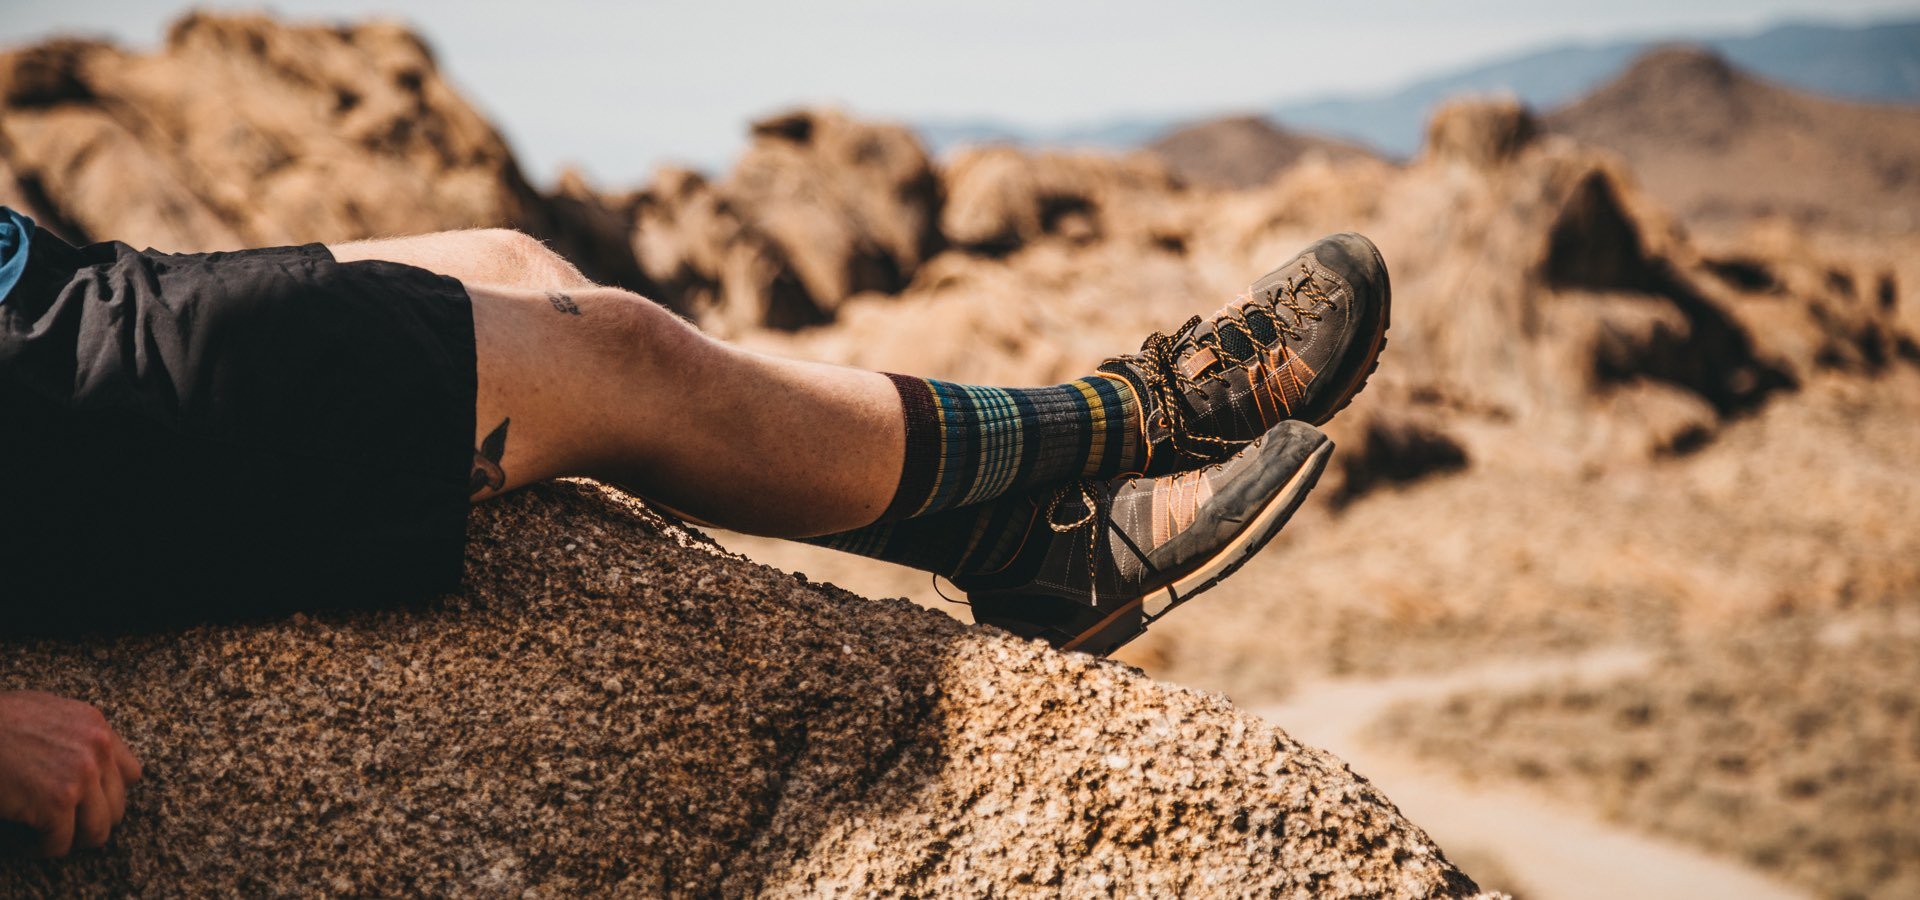 Pericia camisa Lírico 5 consejos que nadie te dirá antes de comprar calcetines de trekking